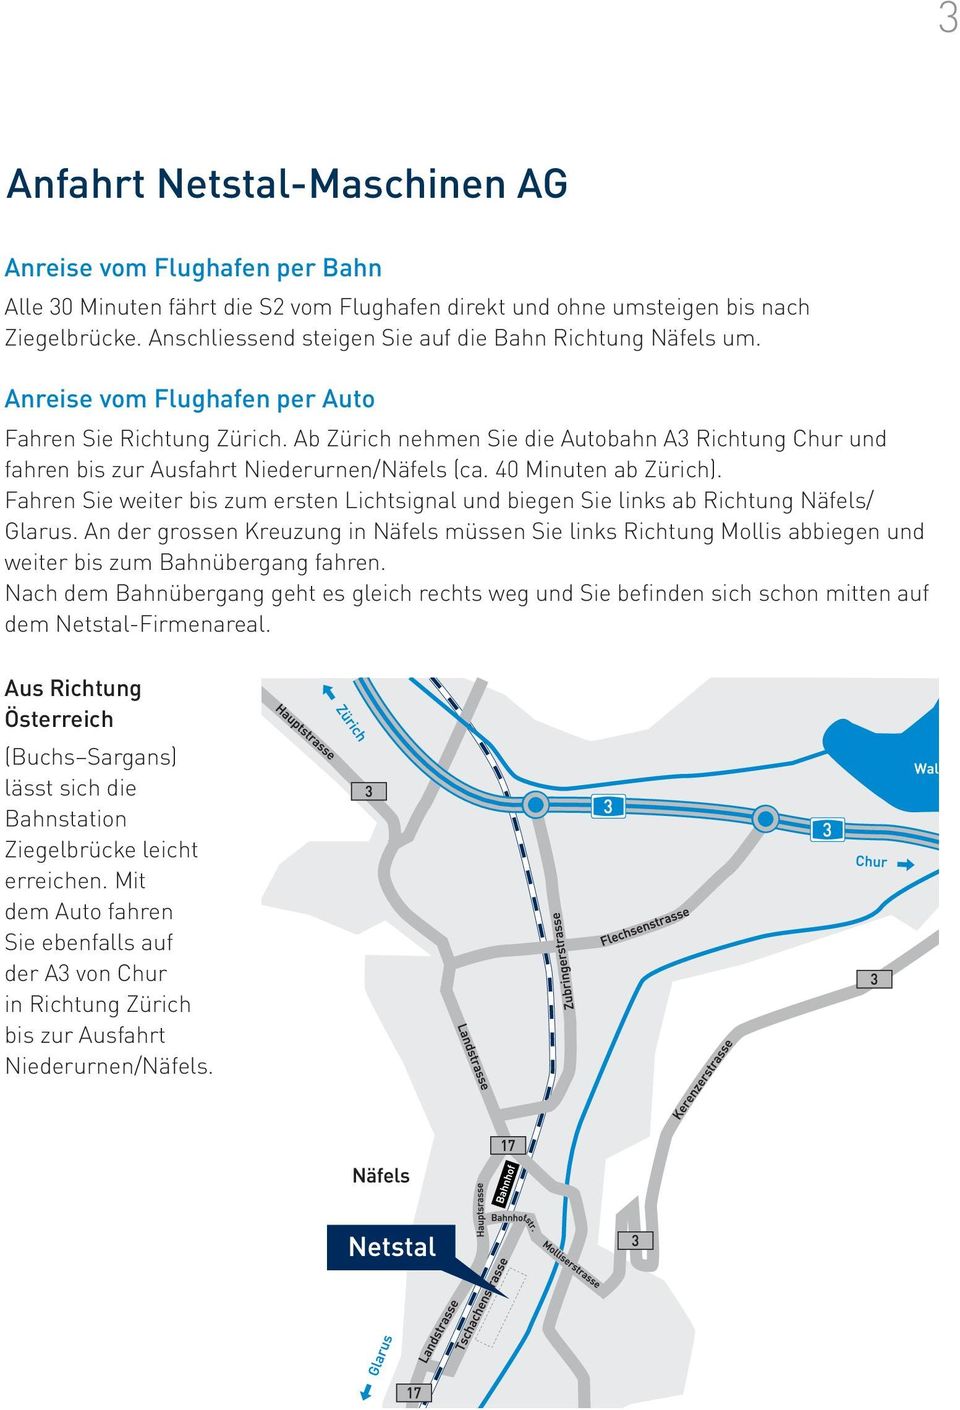 Ab Zürich nehmen Sie die Autobahn A3 Richtung Chur und fahren bis zur Ausfahrt Niederurnen/Näfels (ca. 40 Minuten ab Zürich).